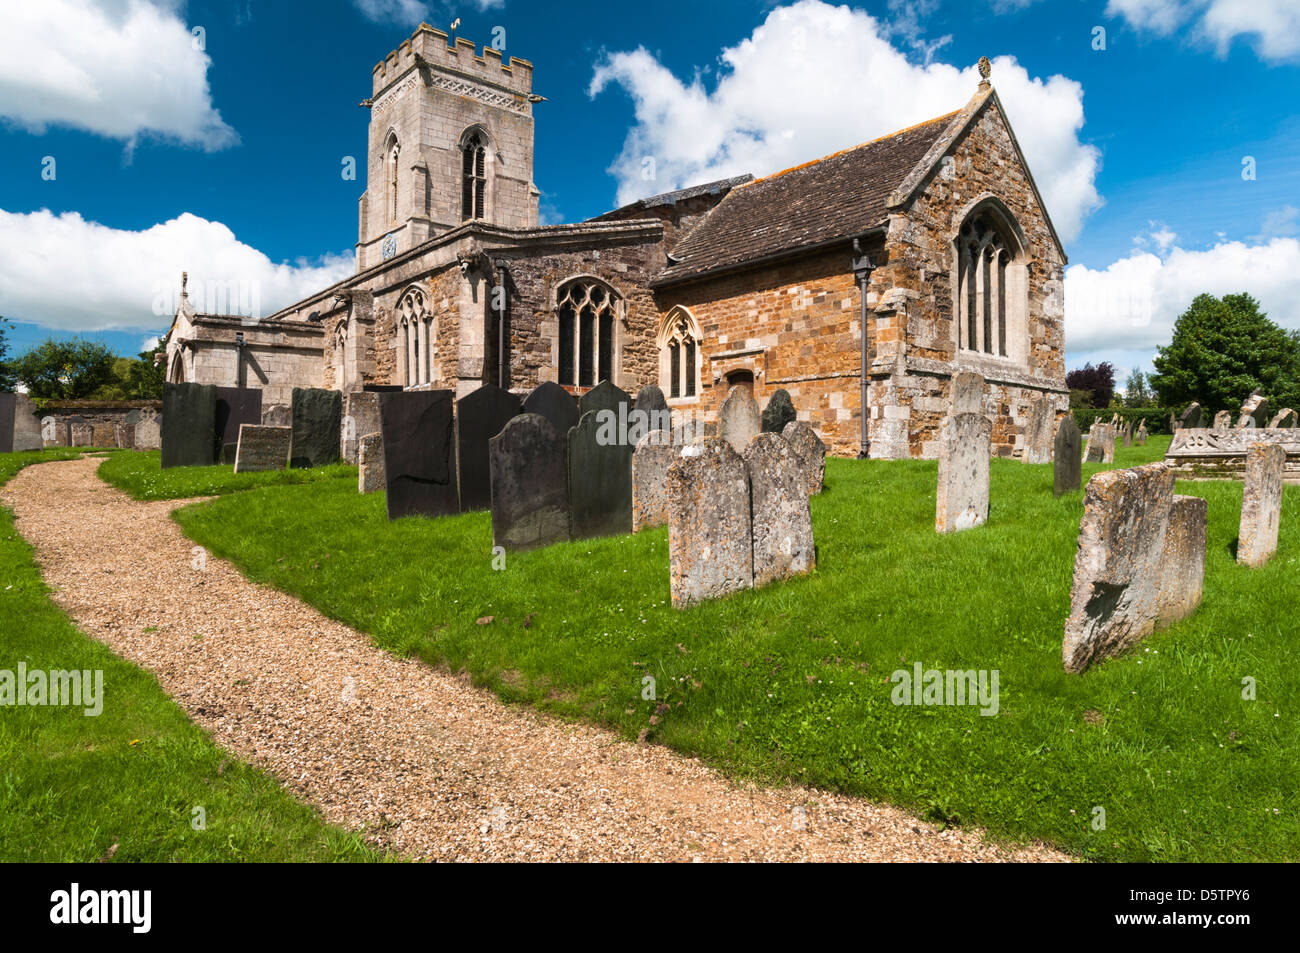 L'église de Saint Pierre et de l'église dans le village pittoresque de Belton en près de Rutland Oakham, Rutland, Angleterre Banque D'Images